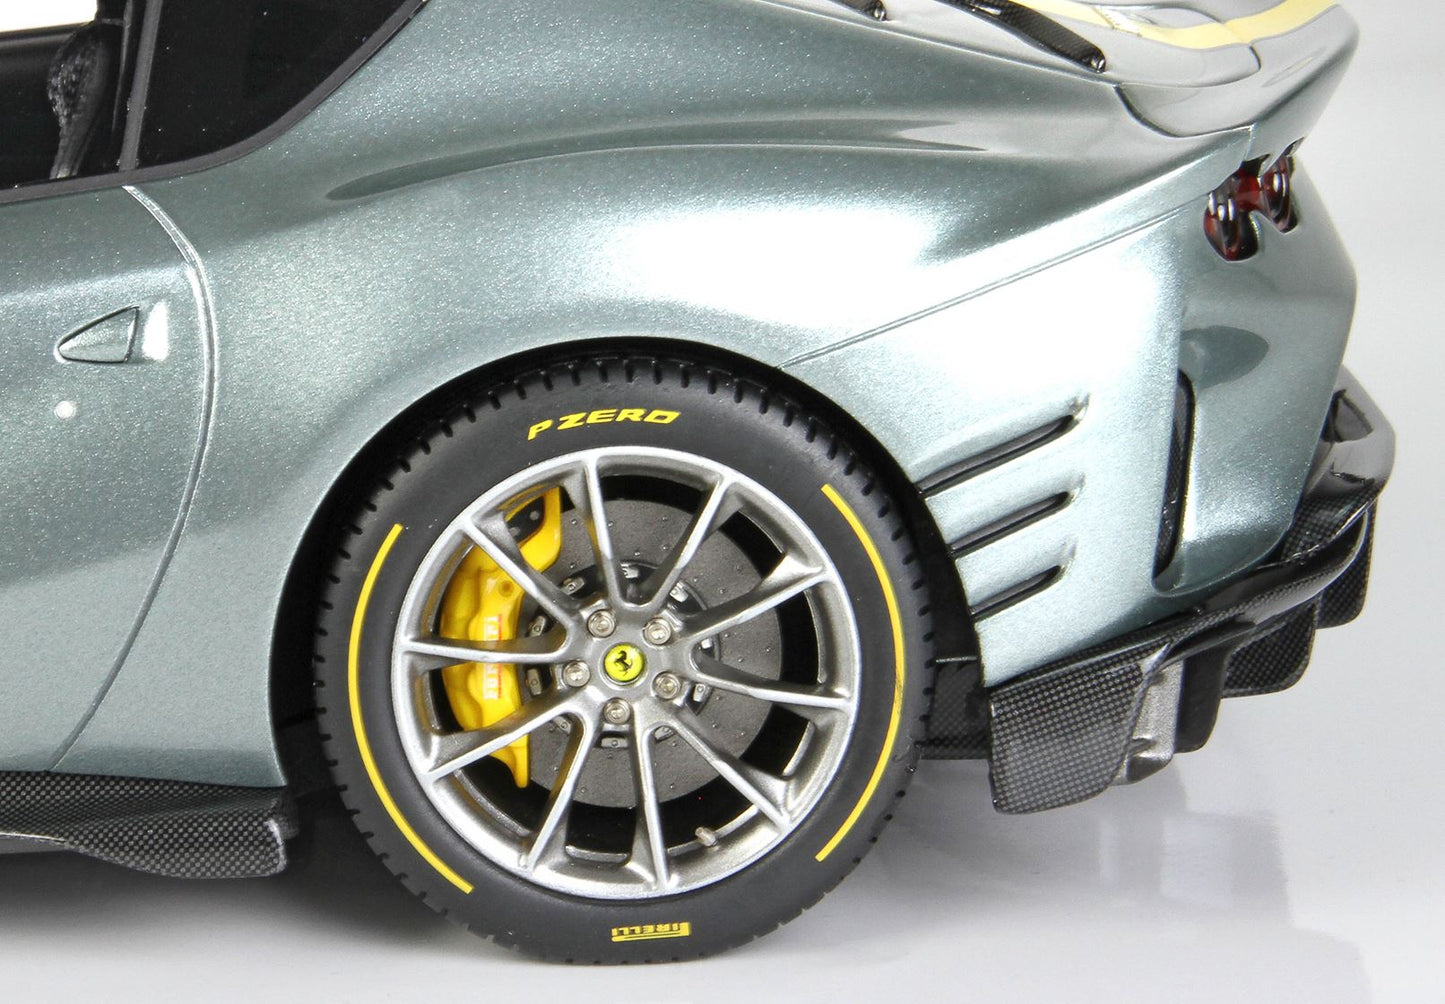 BBR 1/18 Ferrari 812 Competizione 2021 COBURN Grey With Racing Giallo FLY Stripe